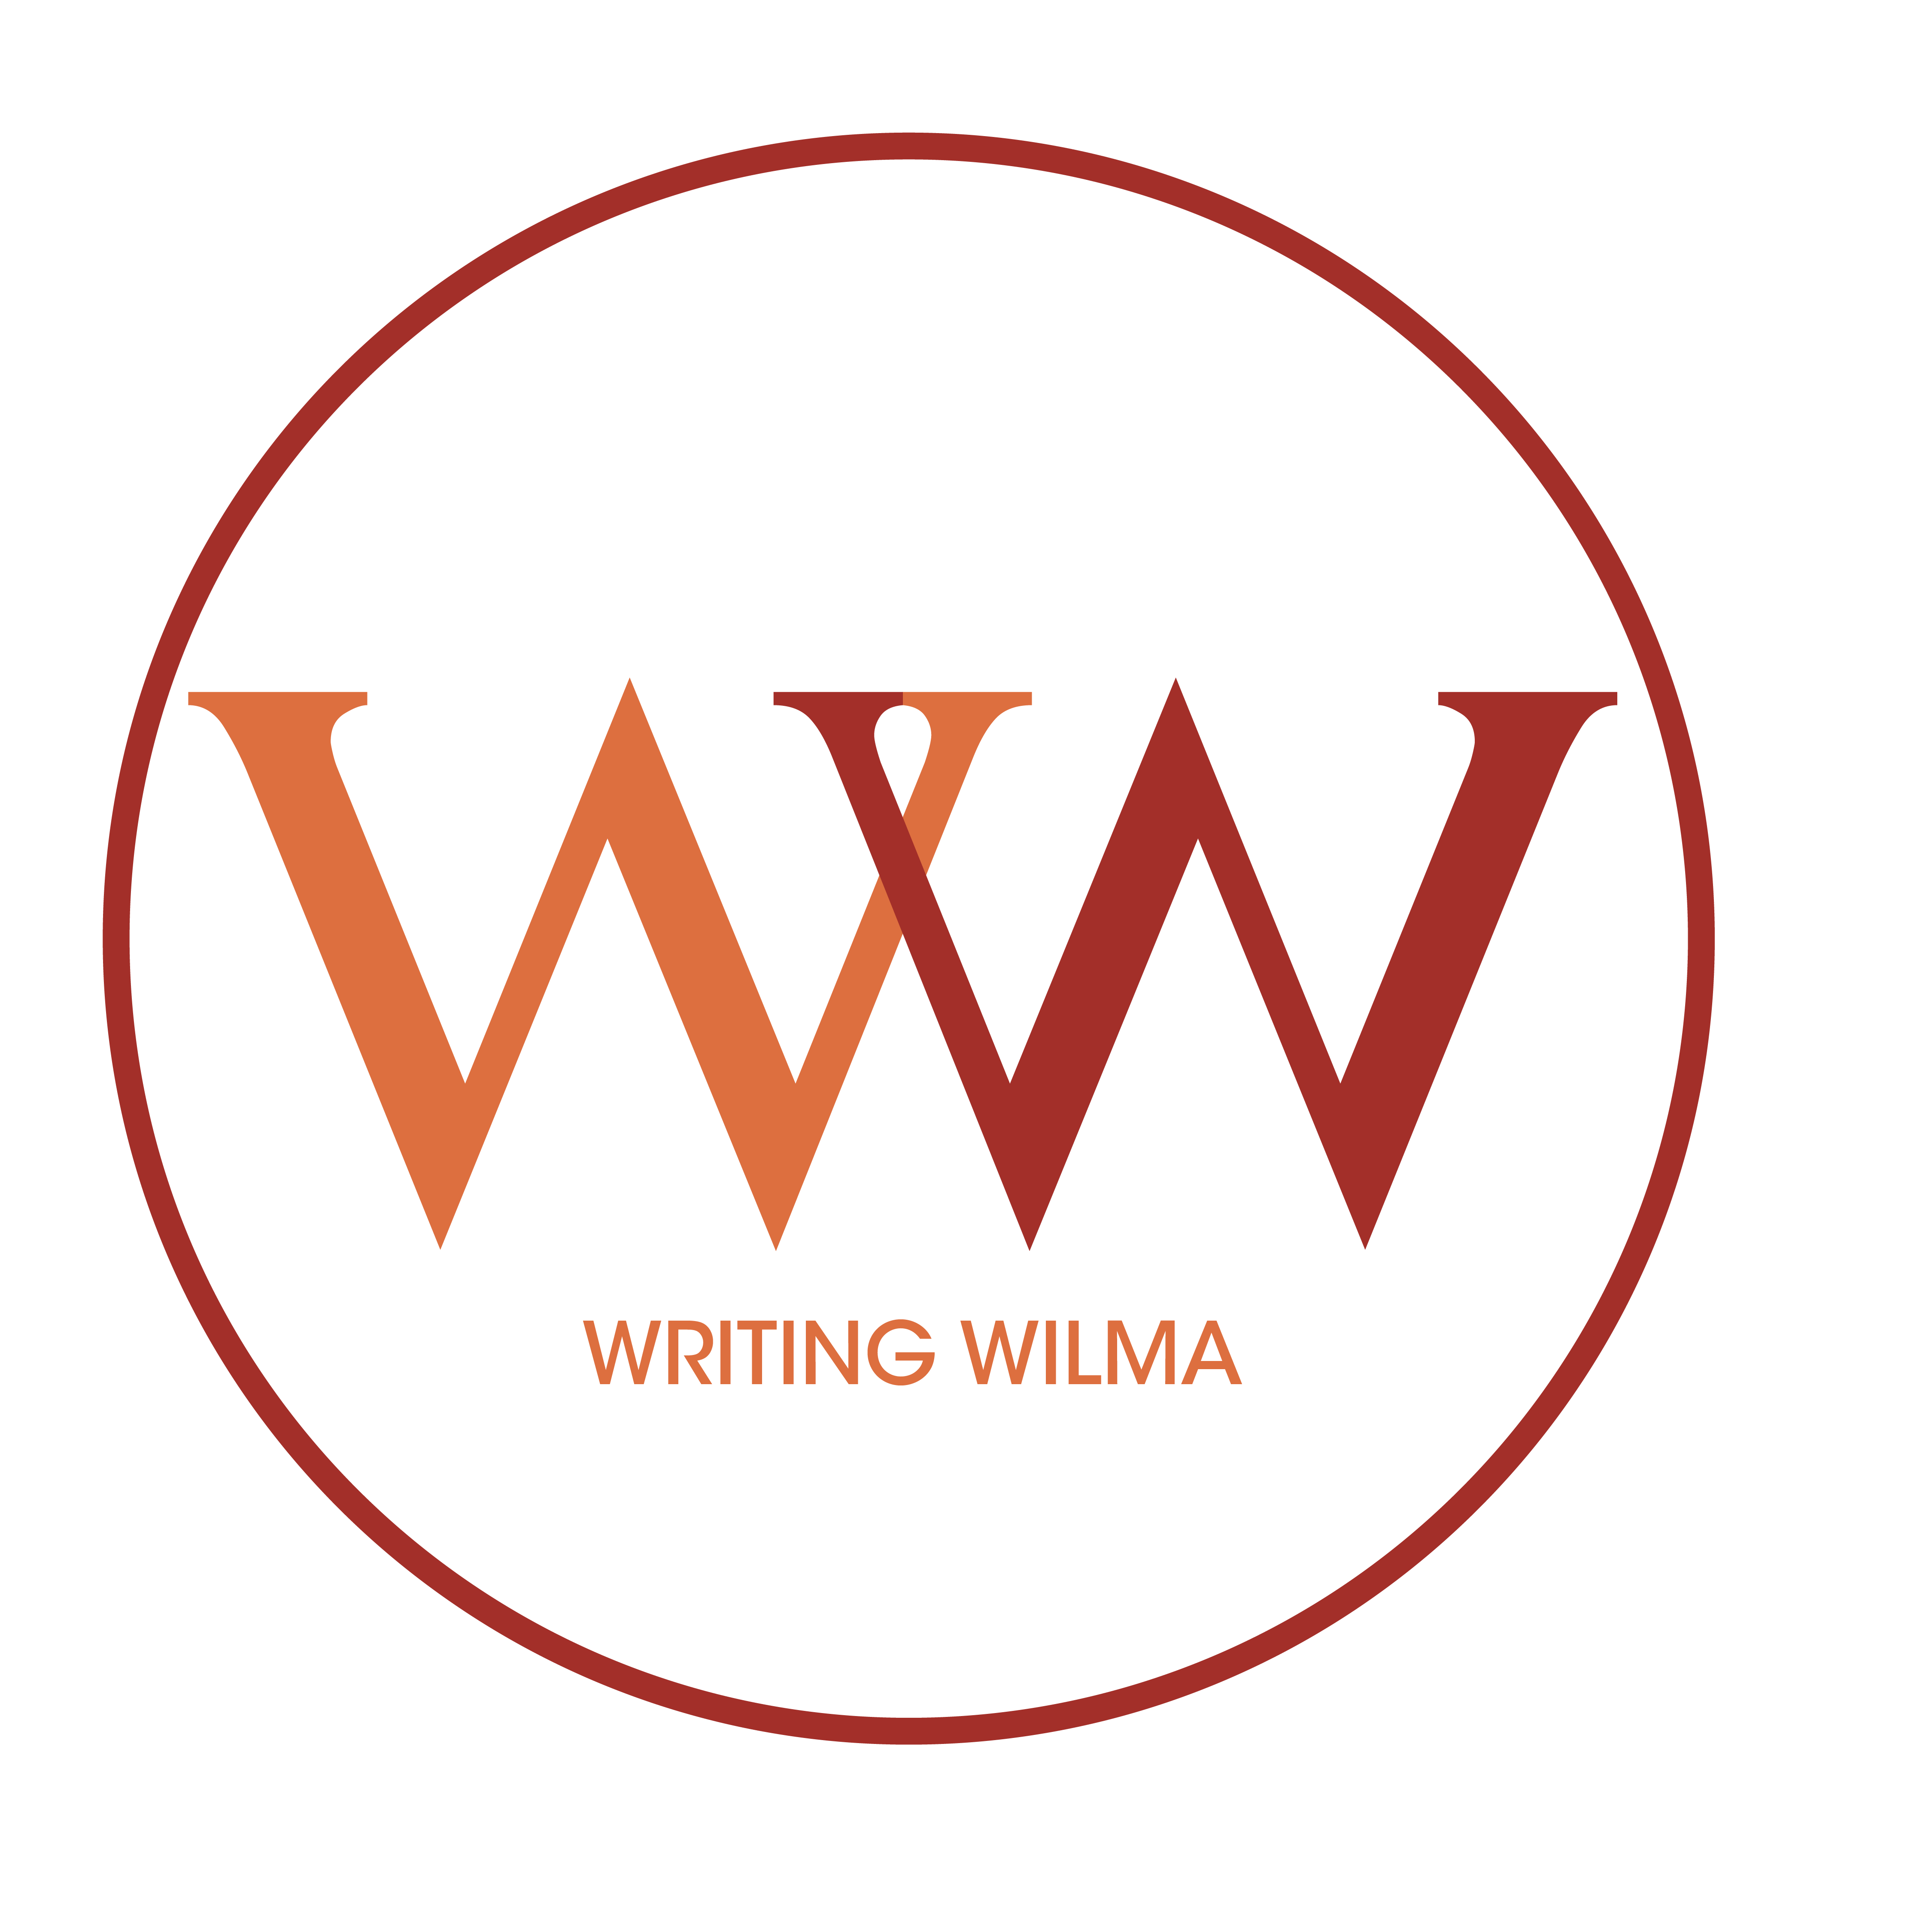 Writing Wilma